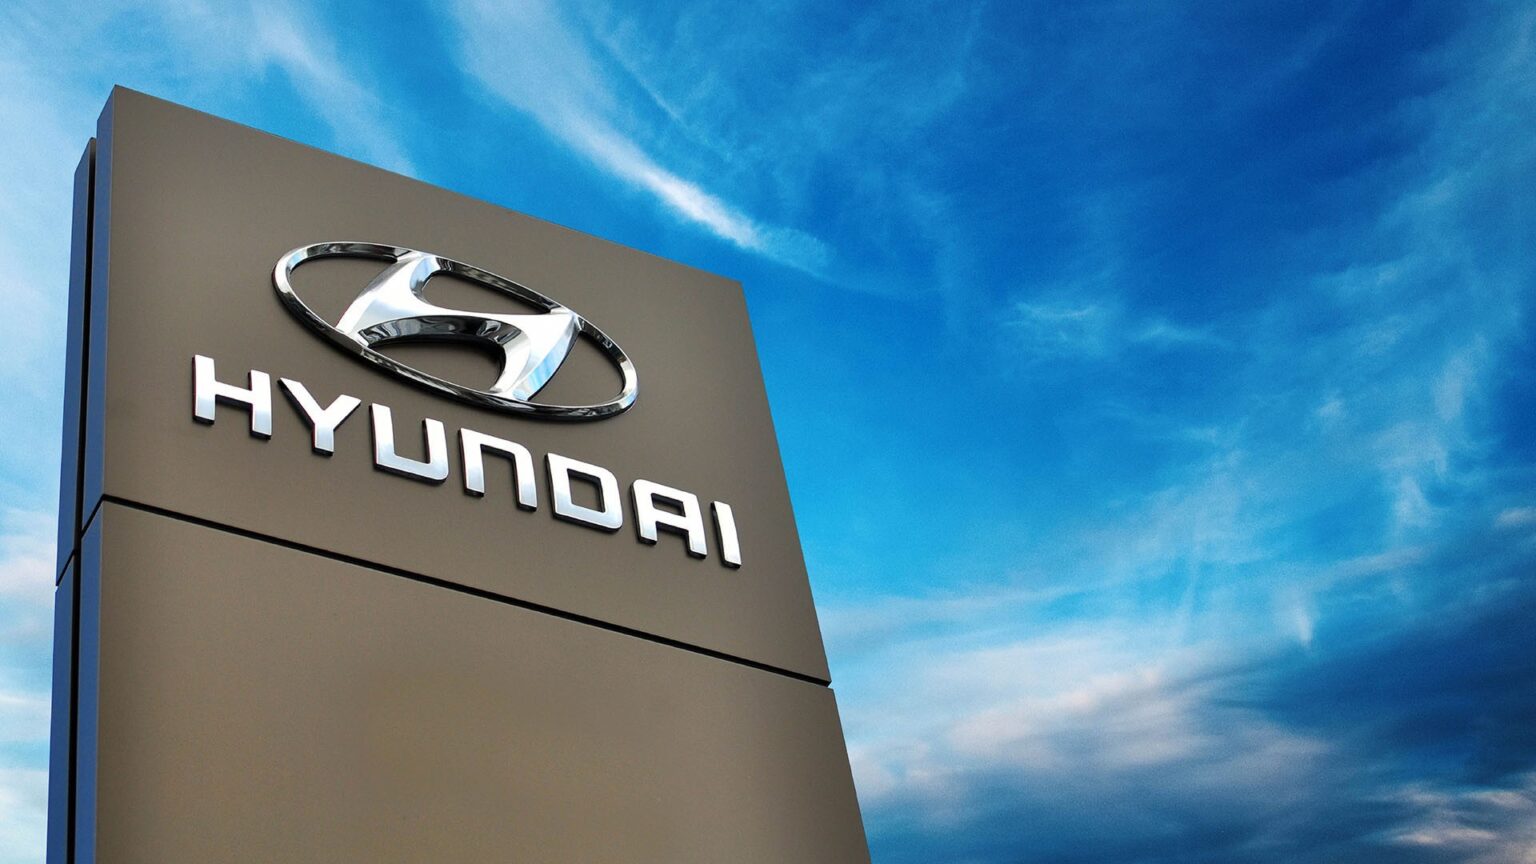 Το Hyundai Motor Group διαθέτει 2 εκατομμύρια δολάρια για τους πληγέντες της Τουρκίας και της Συρίας από τον σεισμό